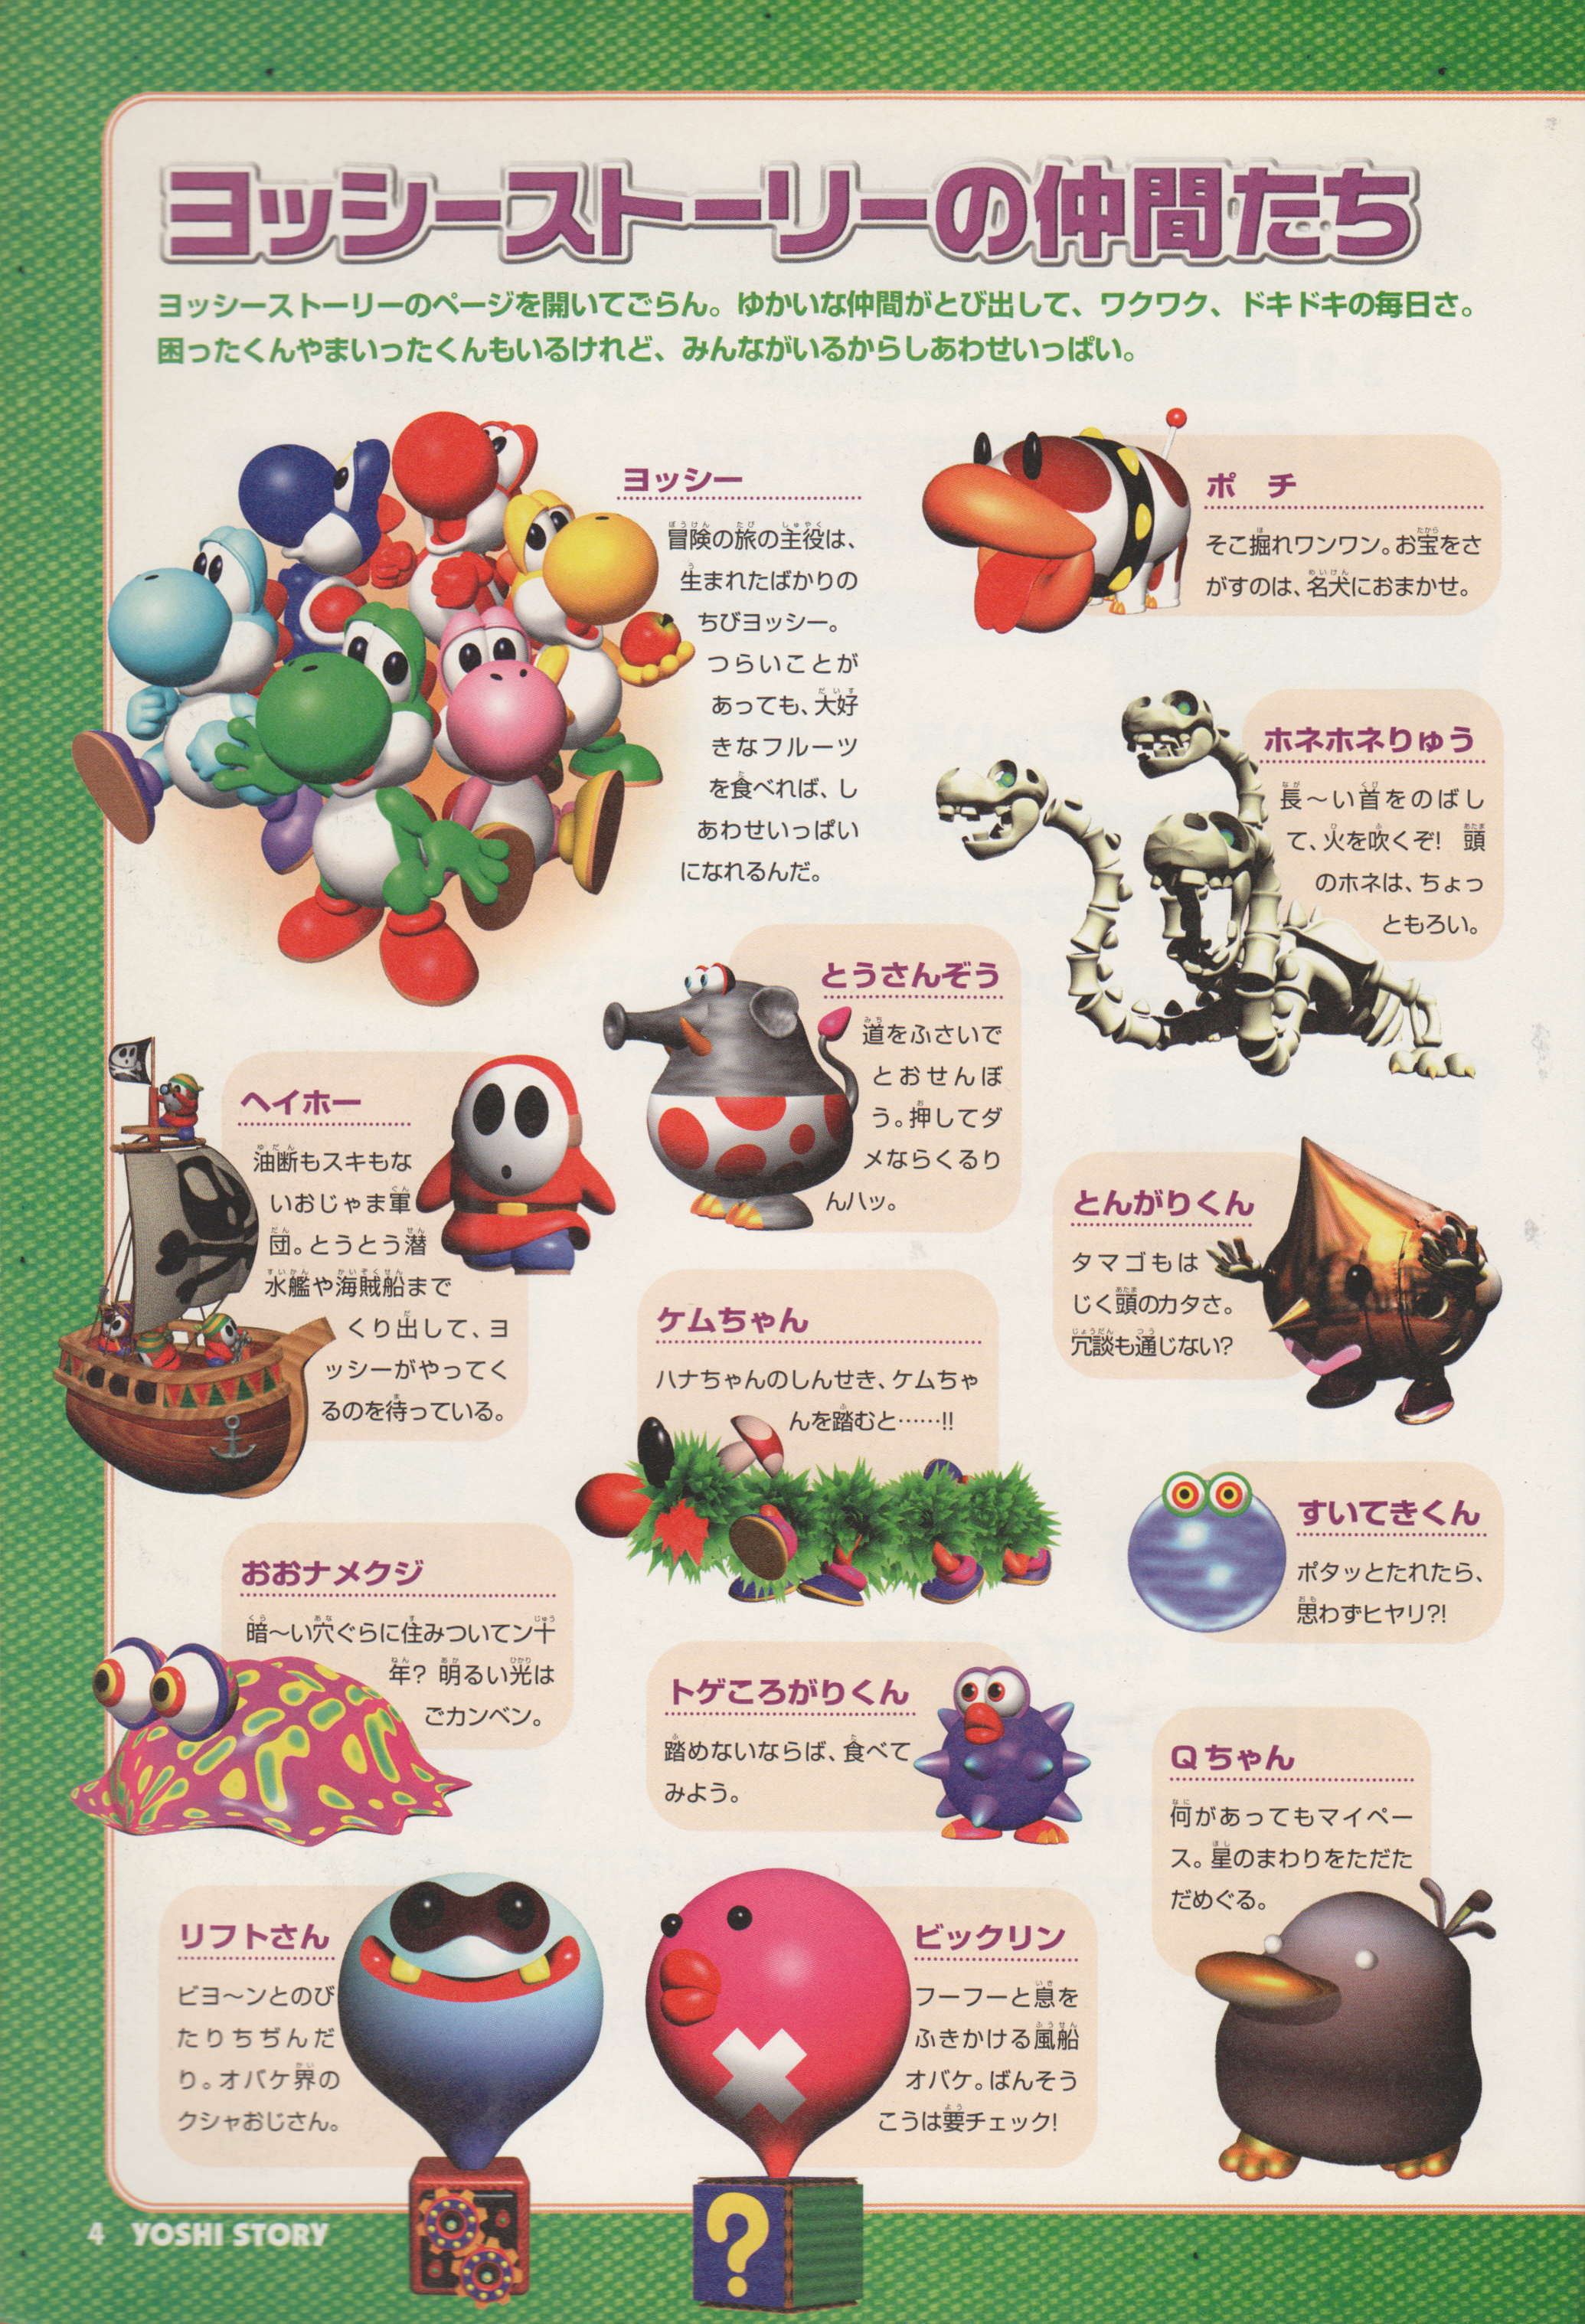 Bone Dragon - Super Mario Wiki, the Mario encyclopedia